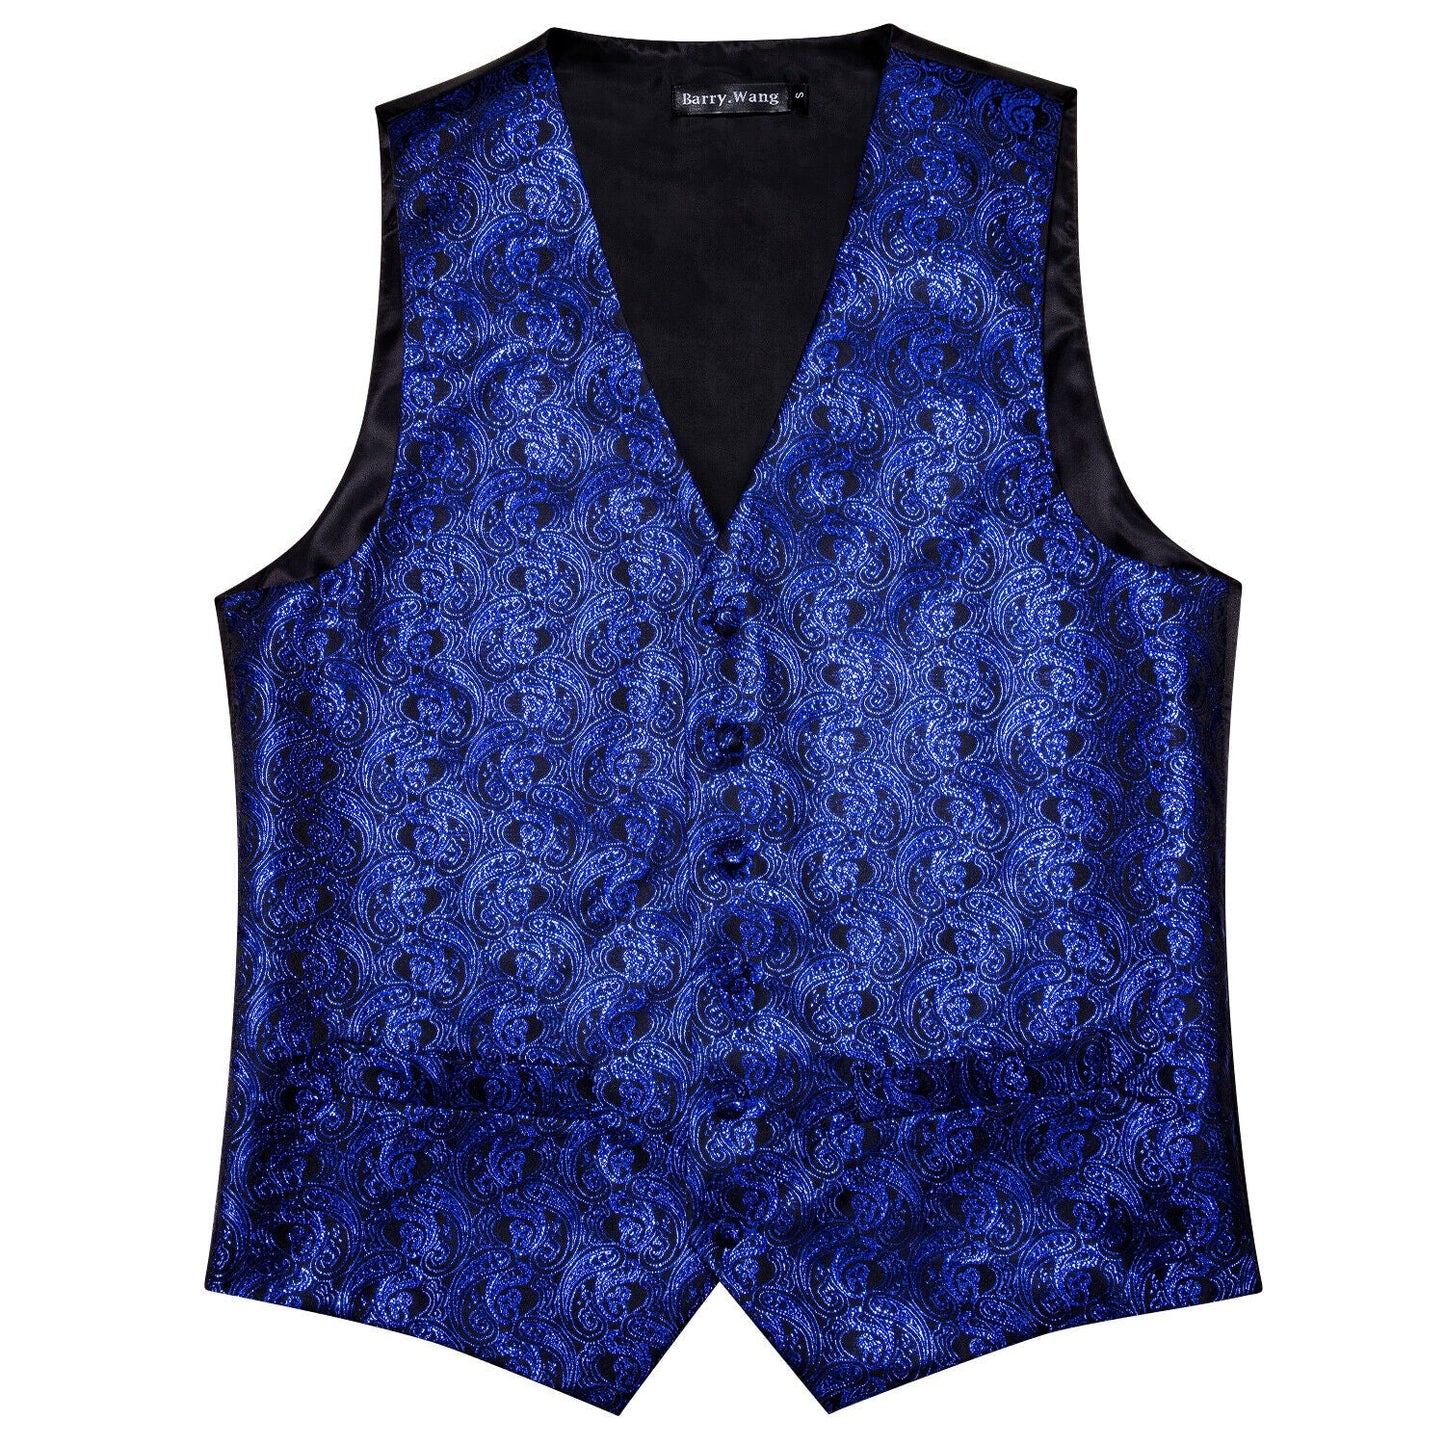 Designer Silky Waistcoat Shiny Novelty Vest Bowtie Mini Paisley Ocean